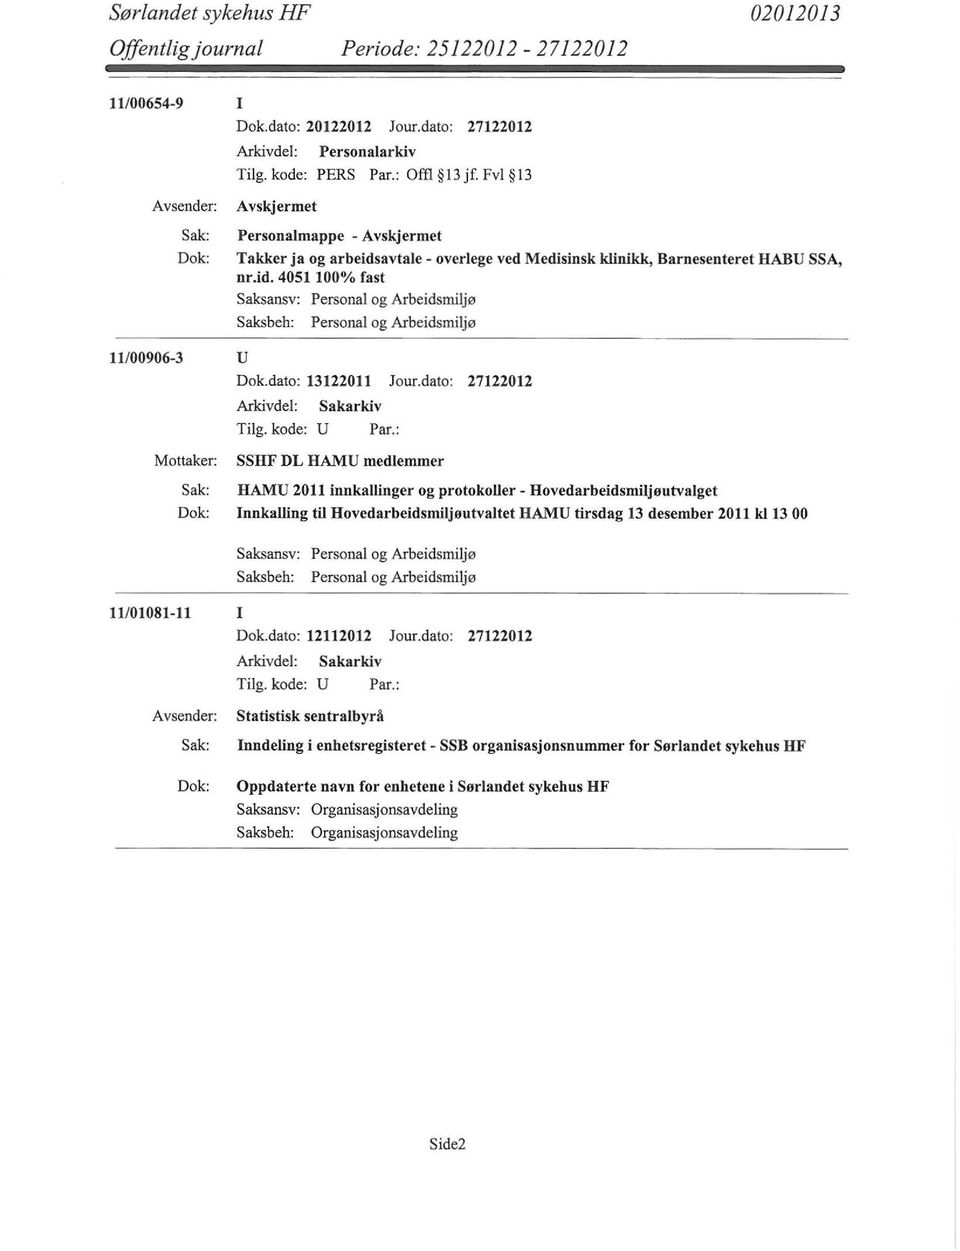 dato: 27122012 SSHF DL HAMU medlemmer HAMU 2011 innkallinger og protokoller- Hovedarbeidsmiljøutvalget Innkalling til Hovedarbeidsmiljøutvaltet HAMU tirsdag 13 desember 2011 k113 00 Saksbeh: